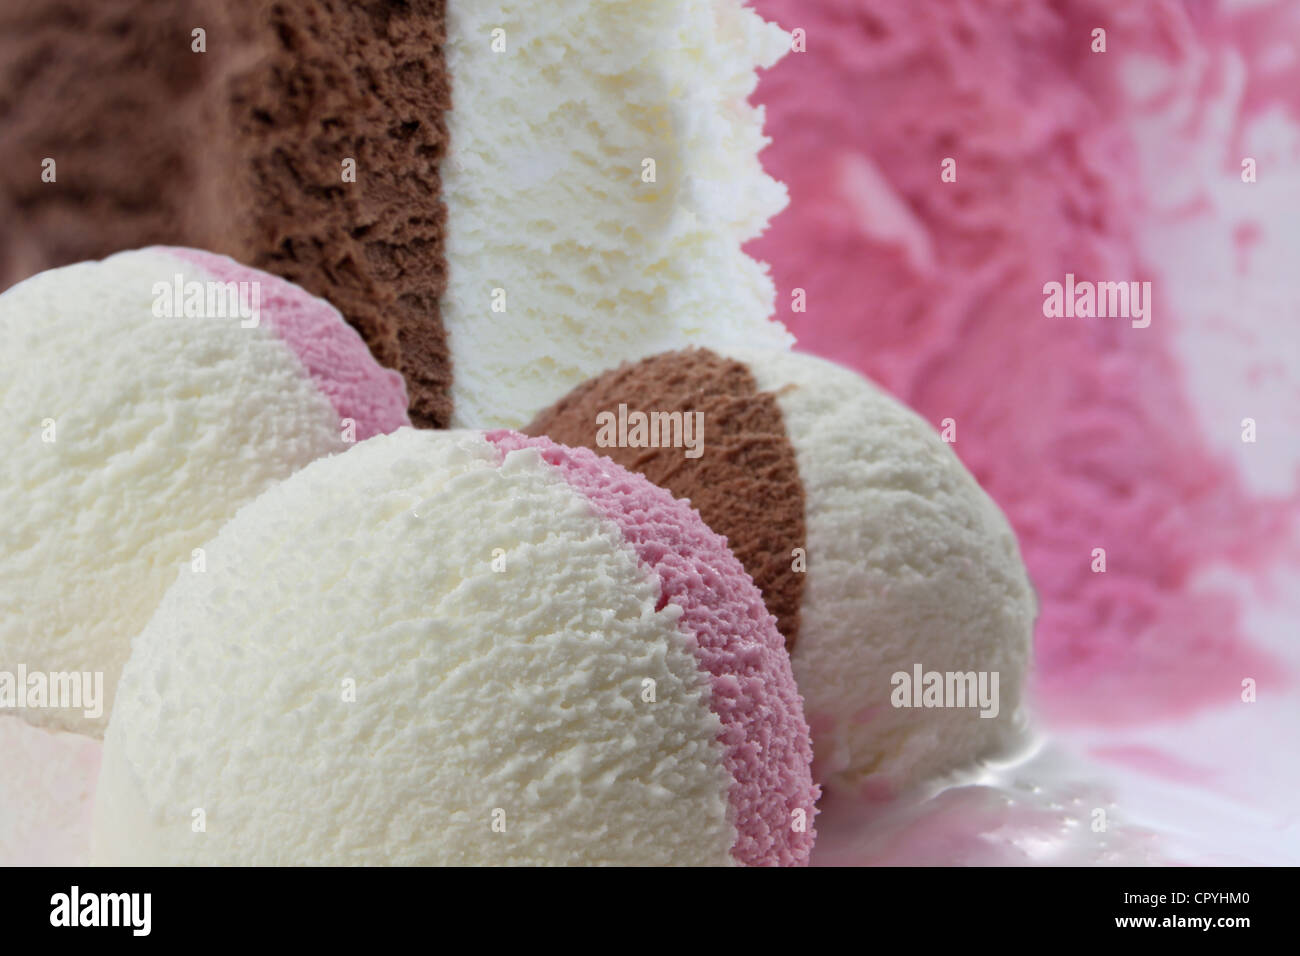 Vanilla chocolate and strawberry ice cream Stock Photo